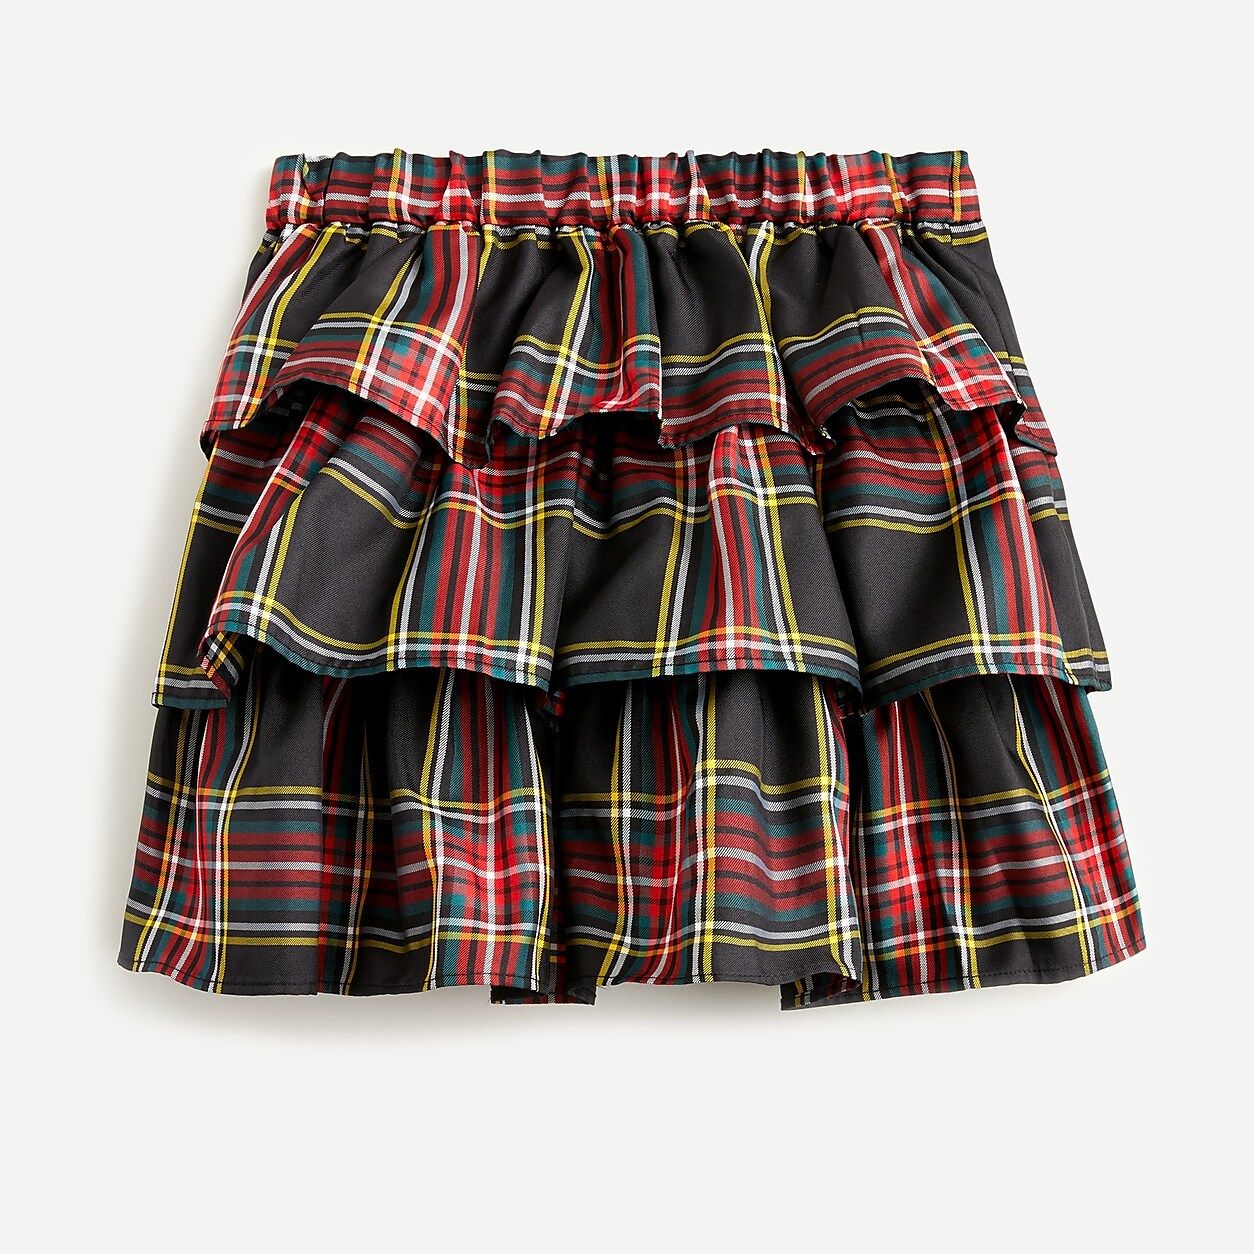 Girls' tiered skirt in Stewart tartan | J.Crew US